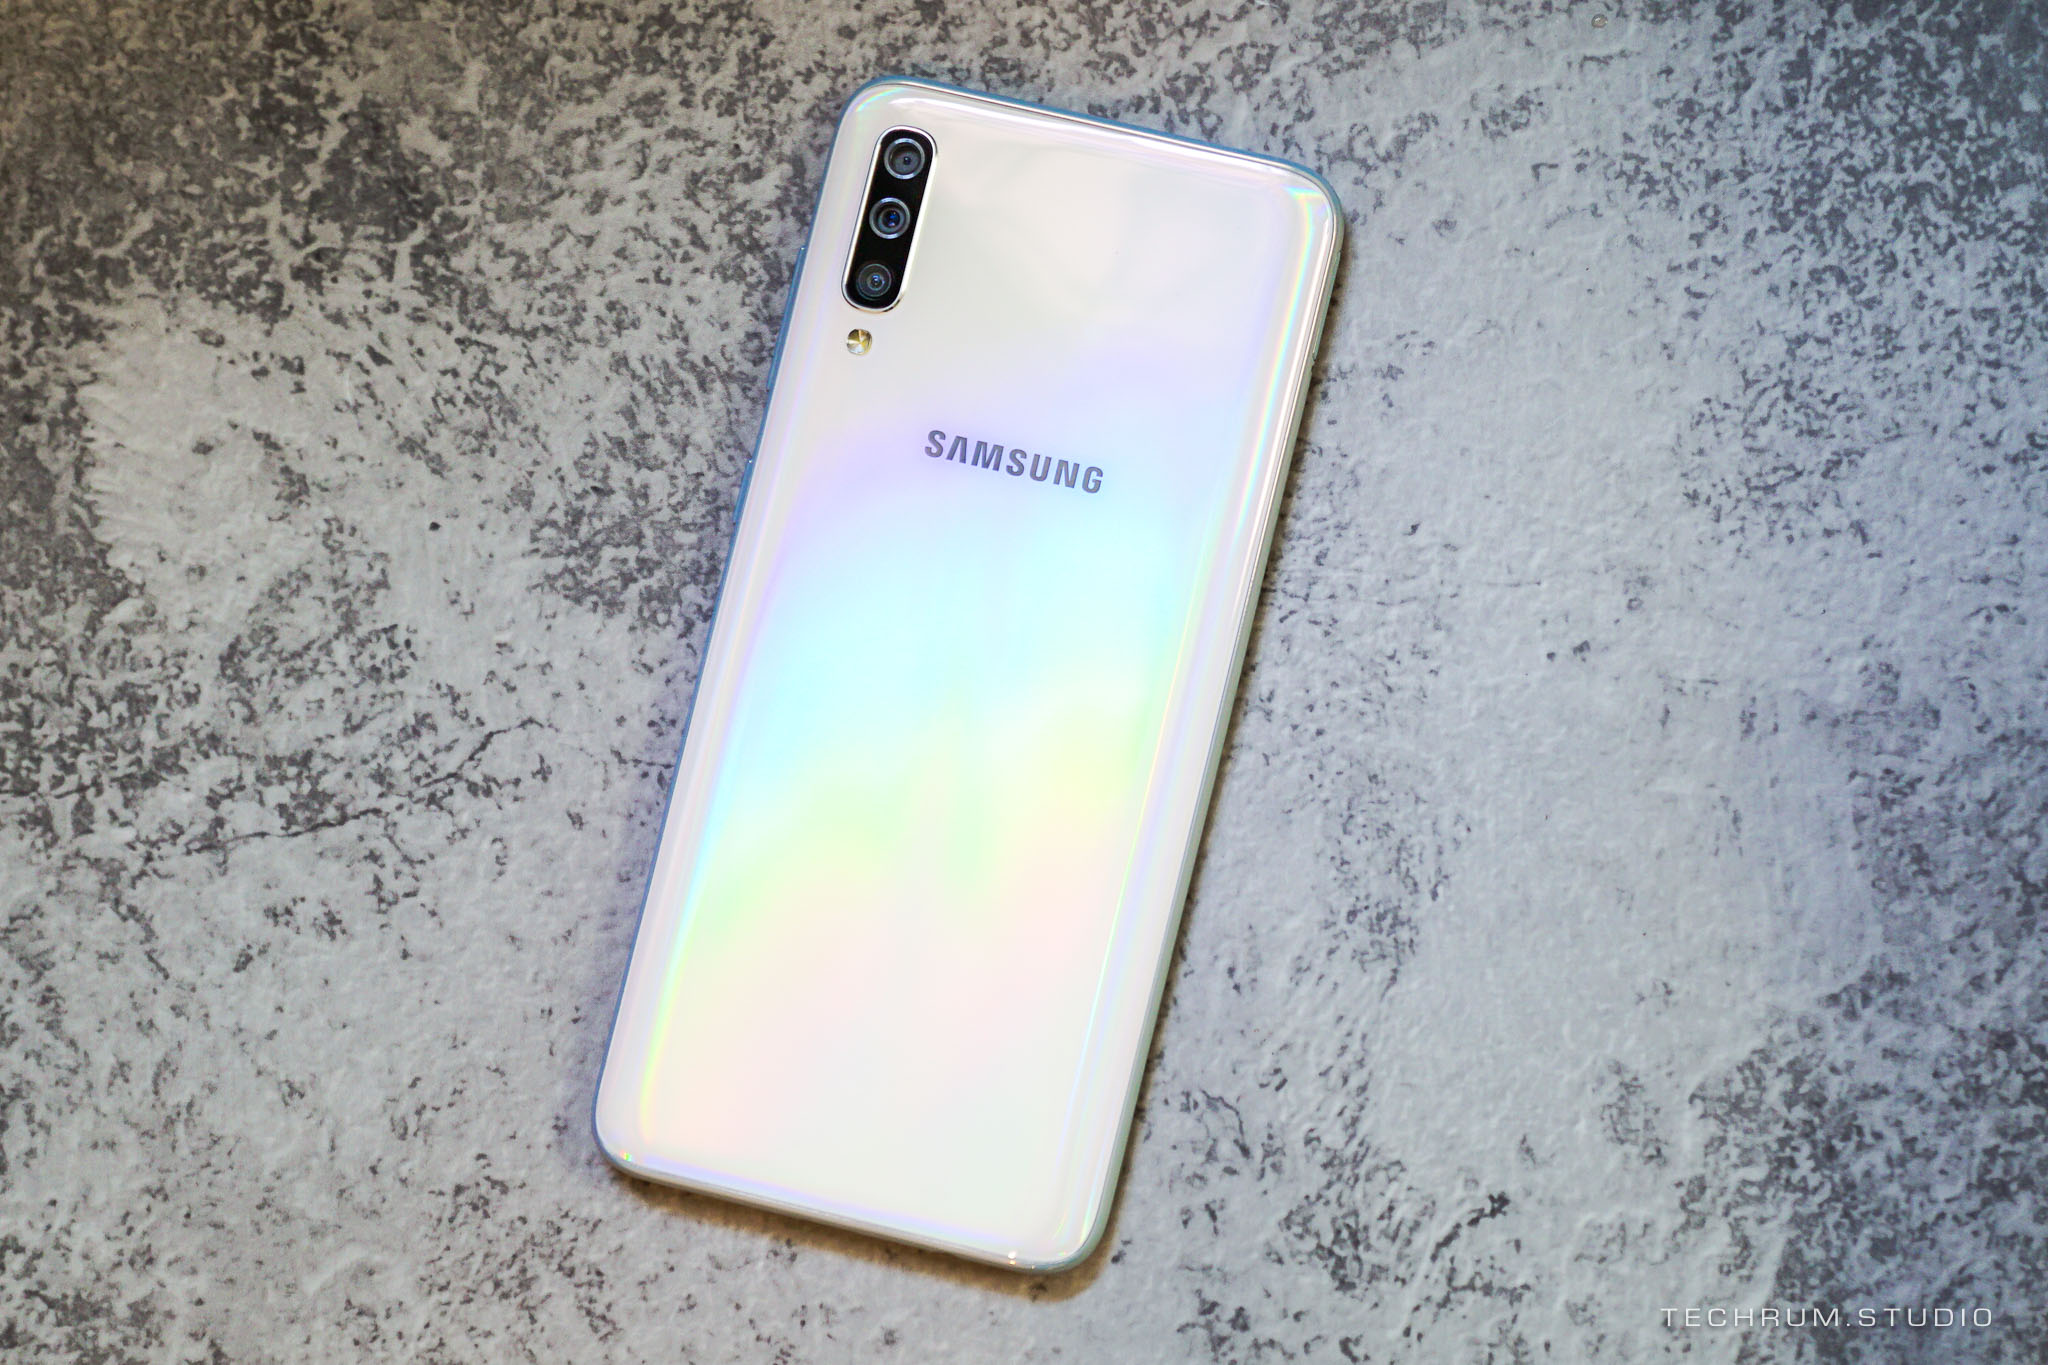 Samsung chính thức ra
mắt Galaxy A70 với màn hình Infinity-U 6.7 inch, 3 camera
sau, giá 9,29 triệu